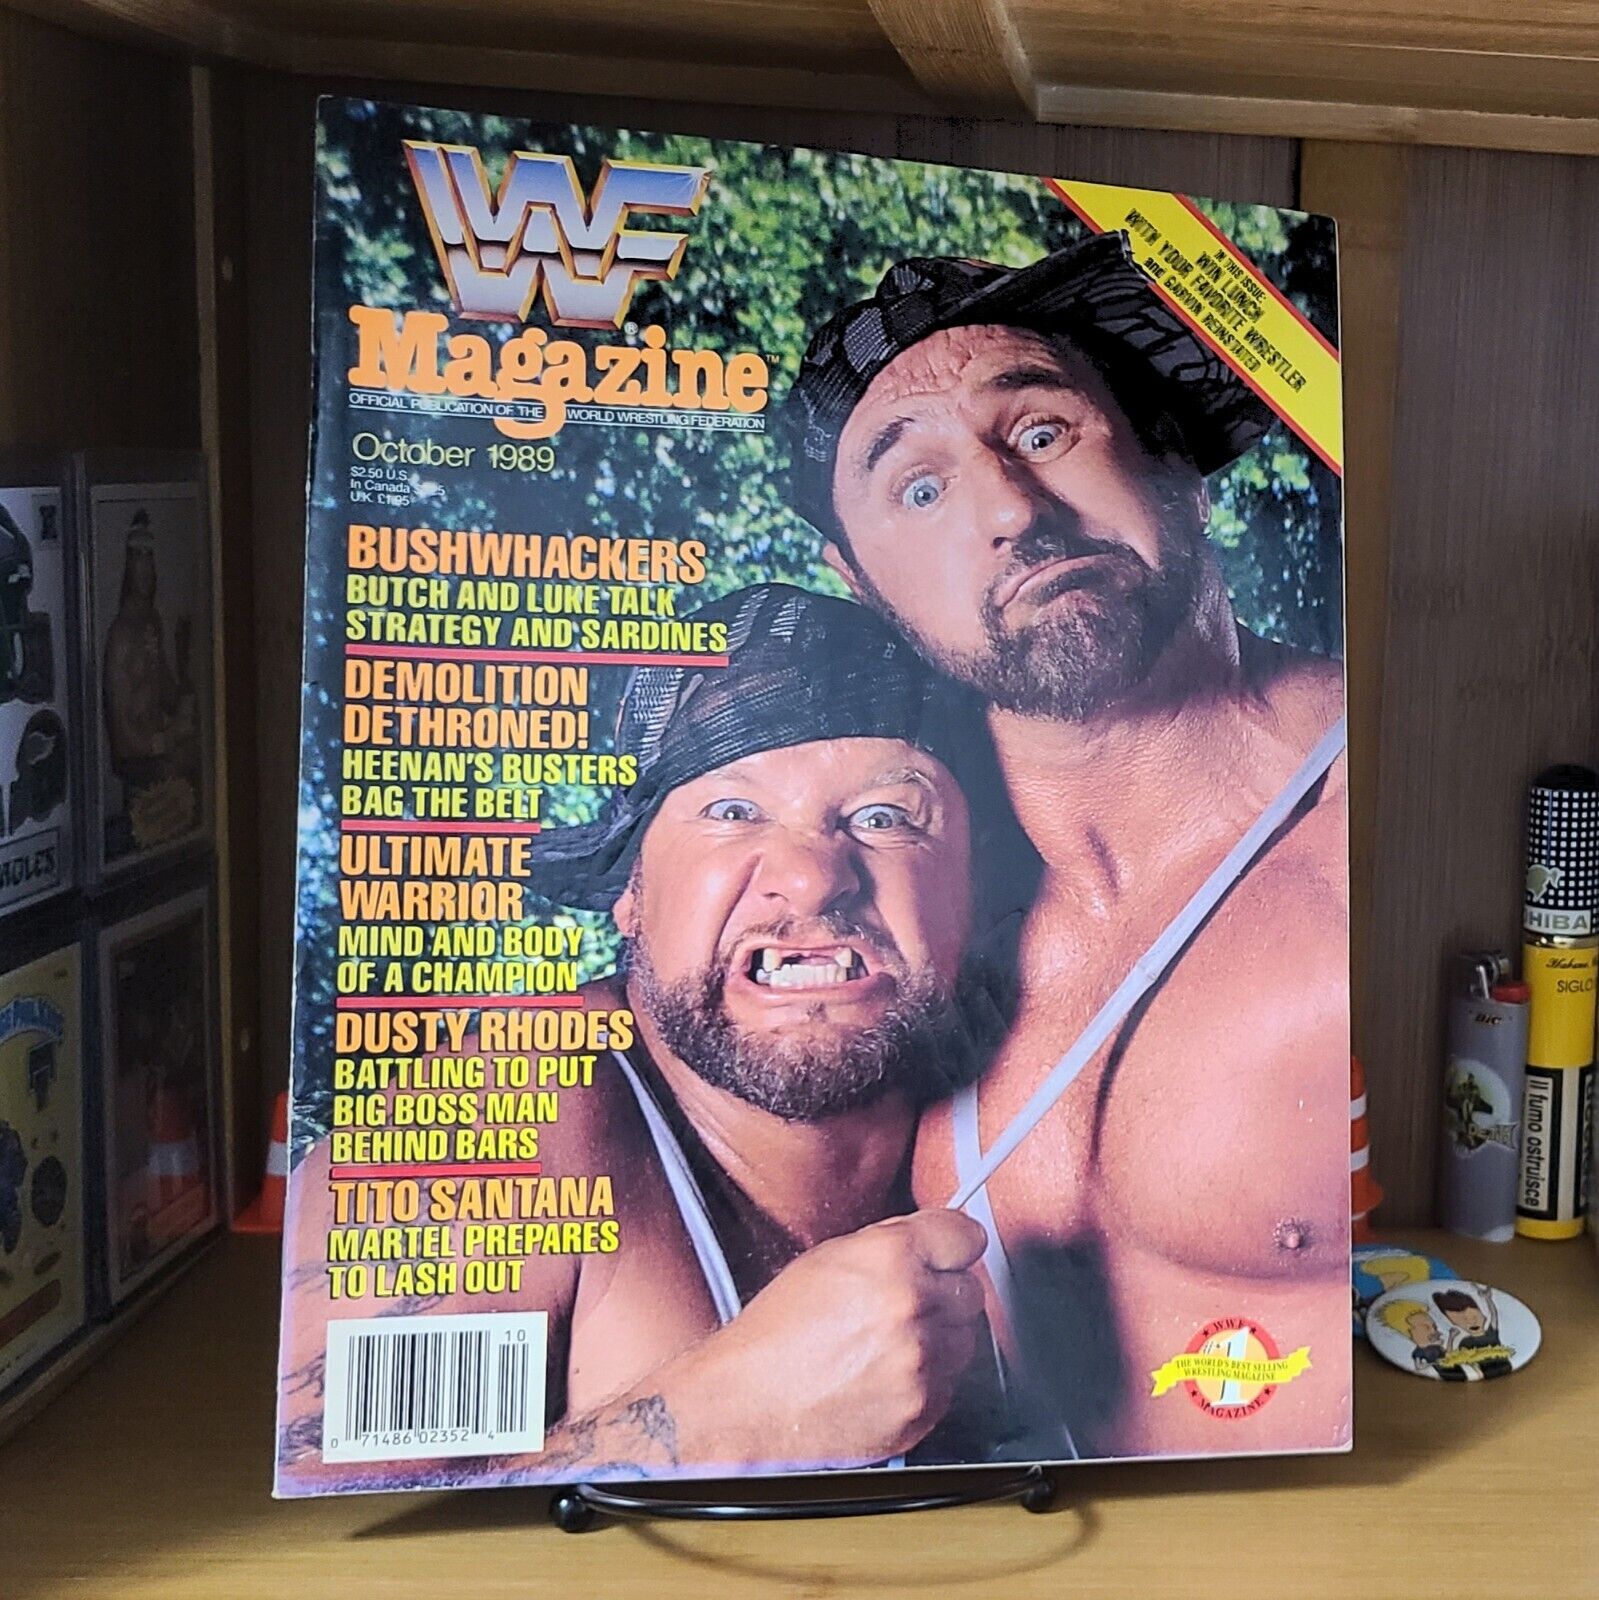 Vintage WWF Magazine October 1989 Bushwhackers Cover